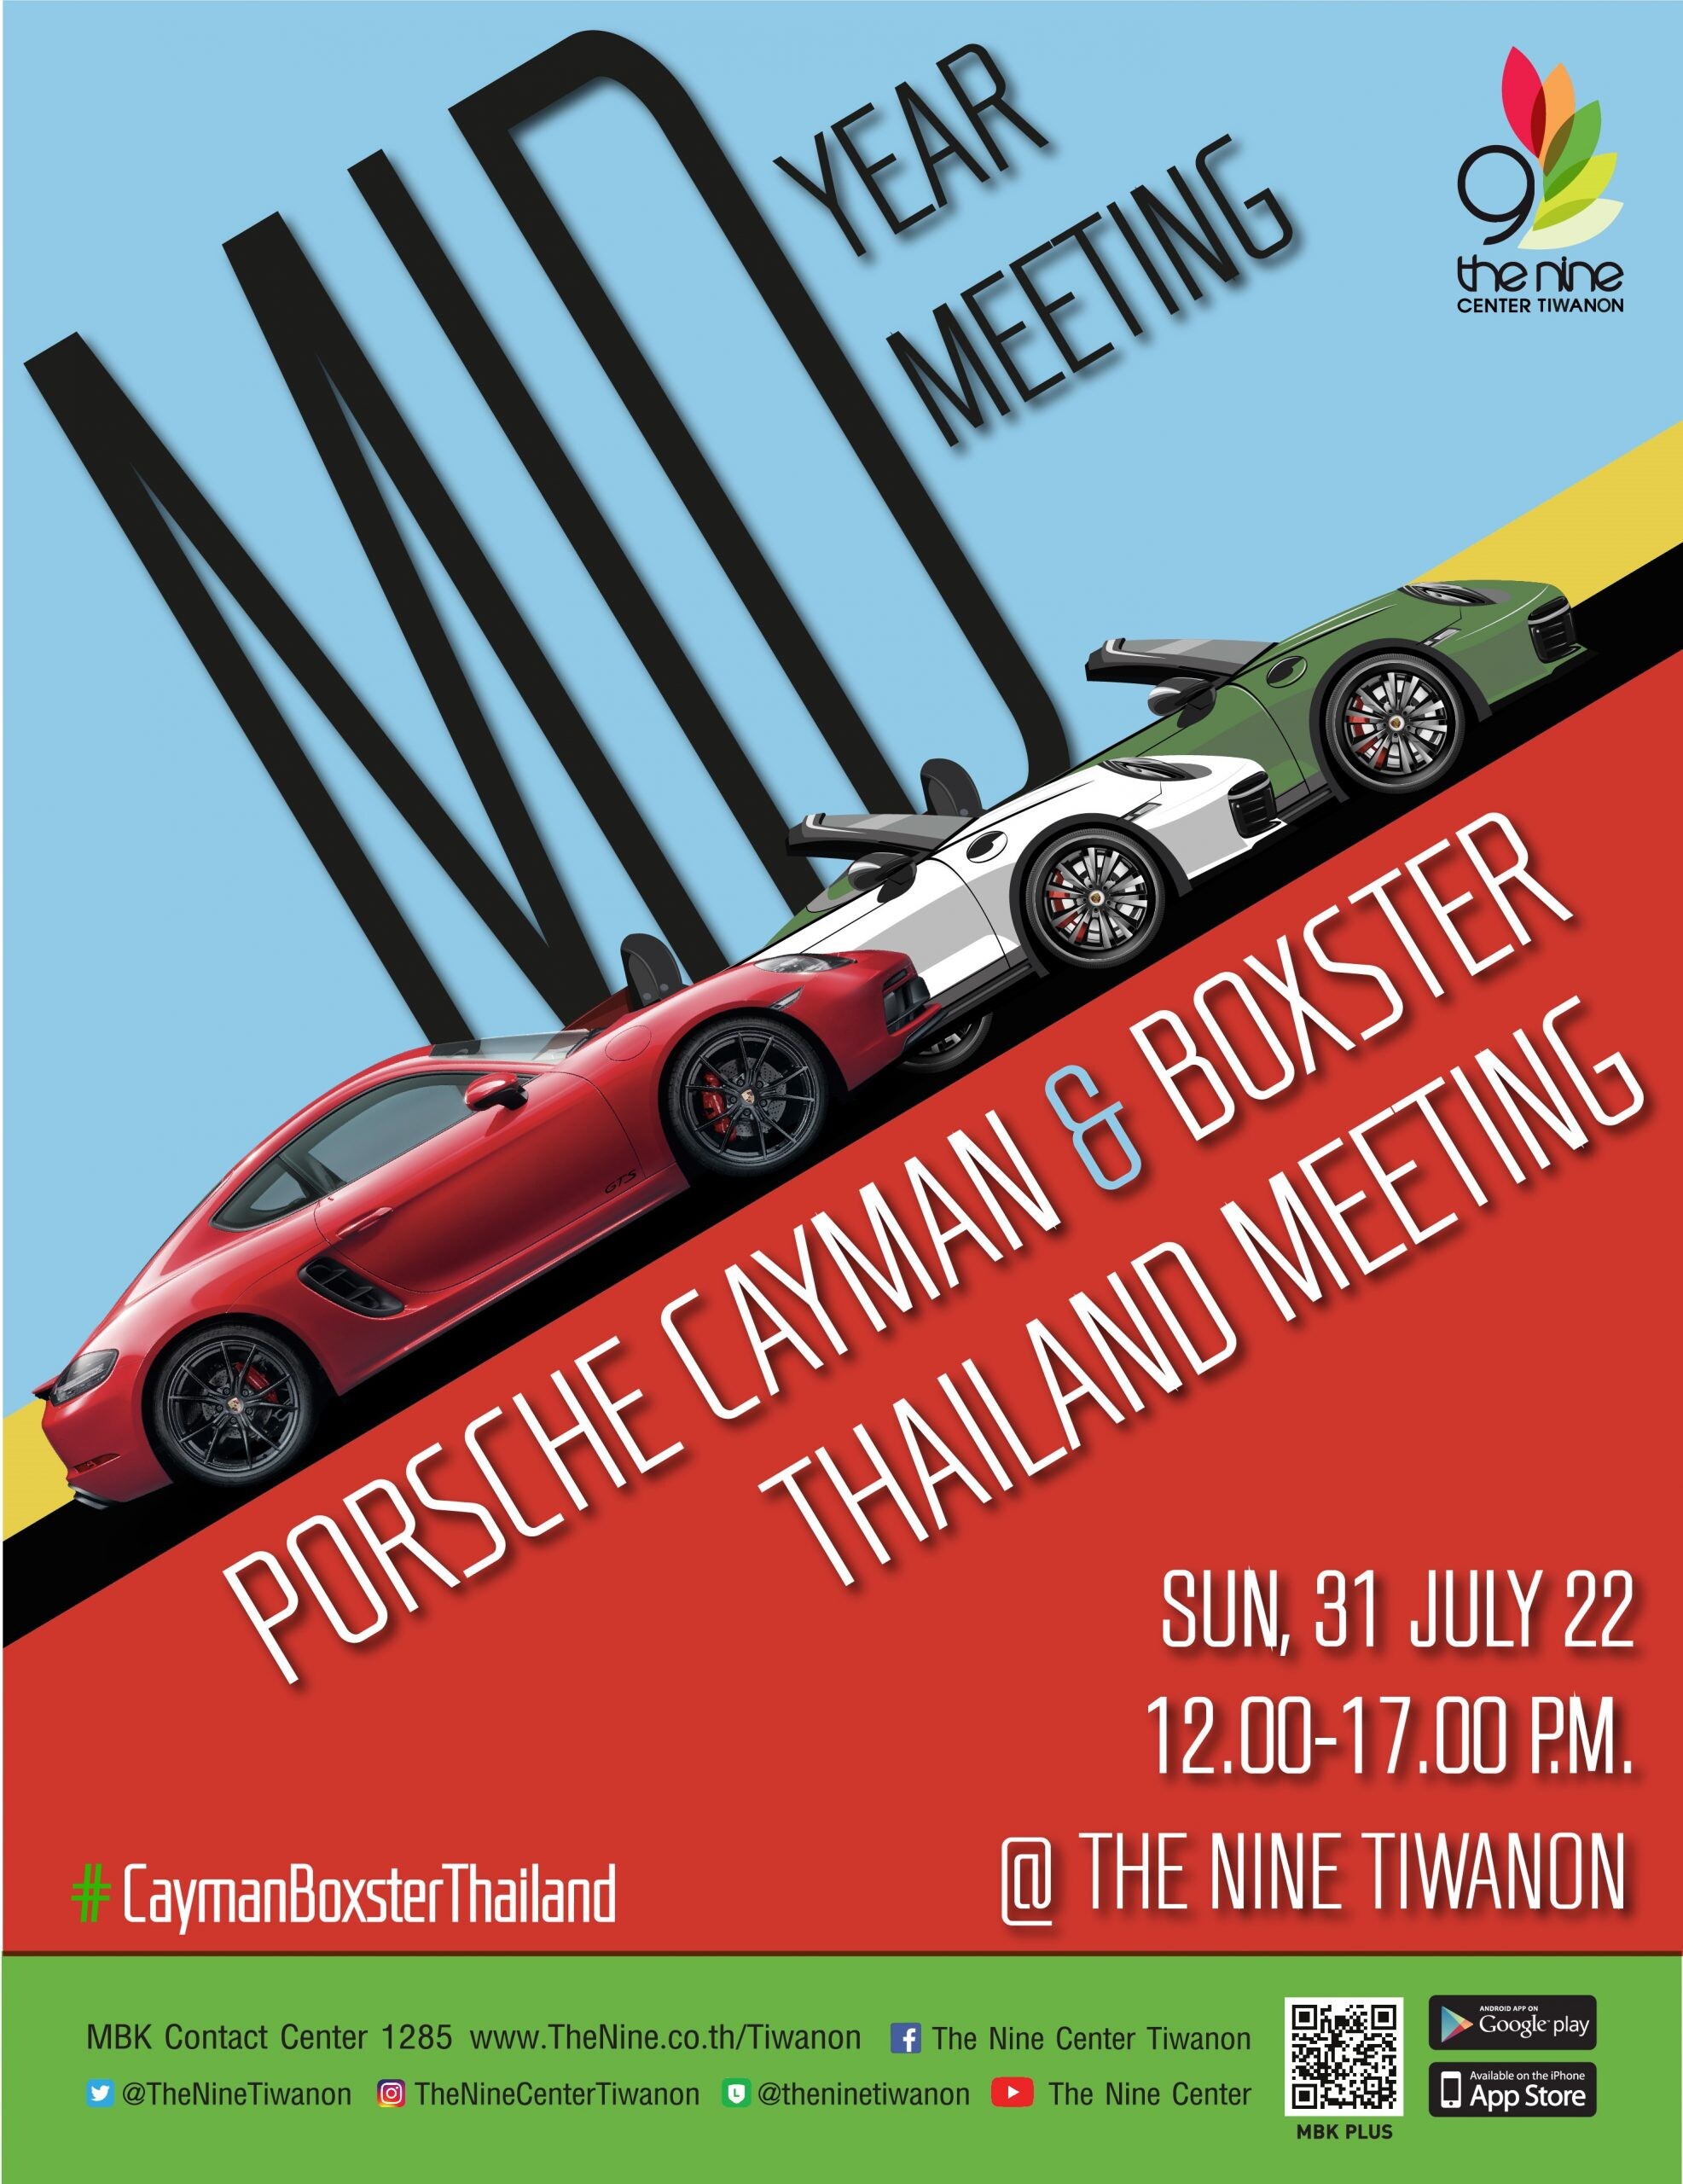 เดอะไนน์ เซ็นเตอร์ ติวานนท์ เปิดพื้นที่เพื่อคนรักเจ้าชายกบทรงพลัง "Porsche Cayman &amp; Boxster Thailand Meeting" ครั้งใหญ่ในย่านปทุมธานี